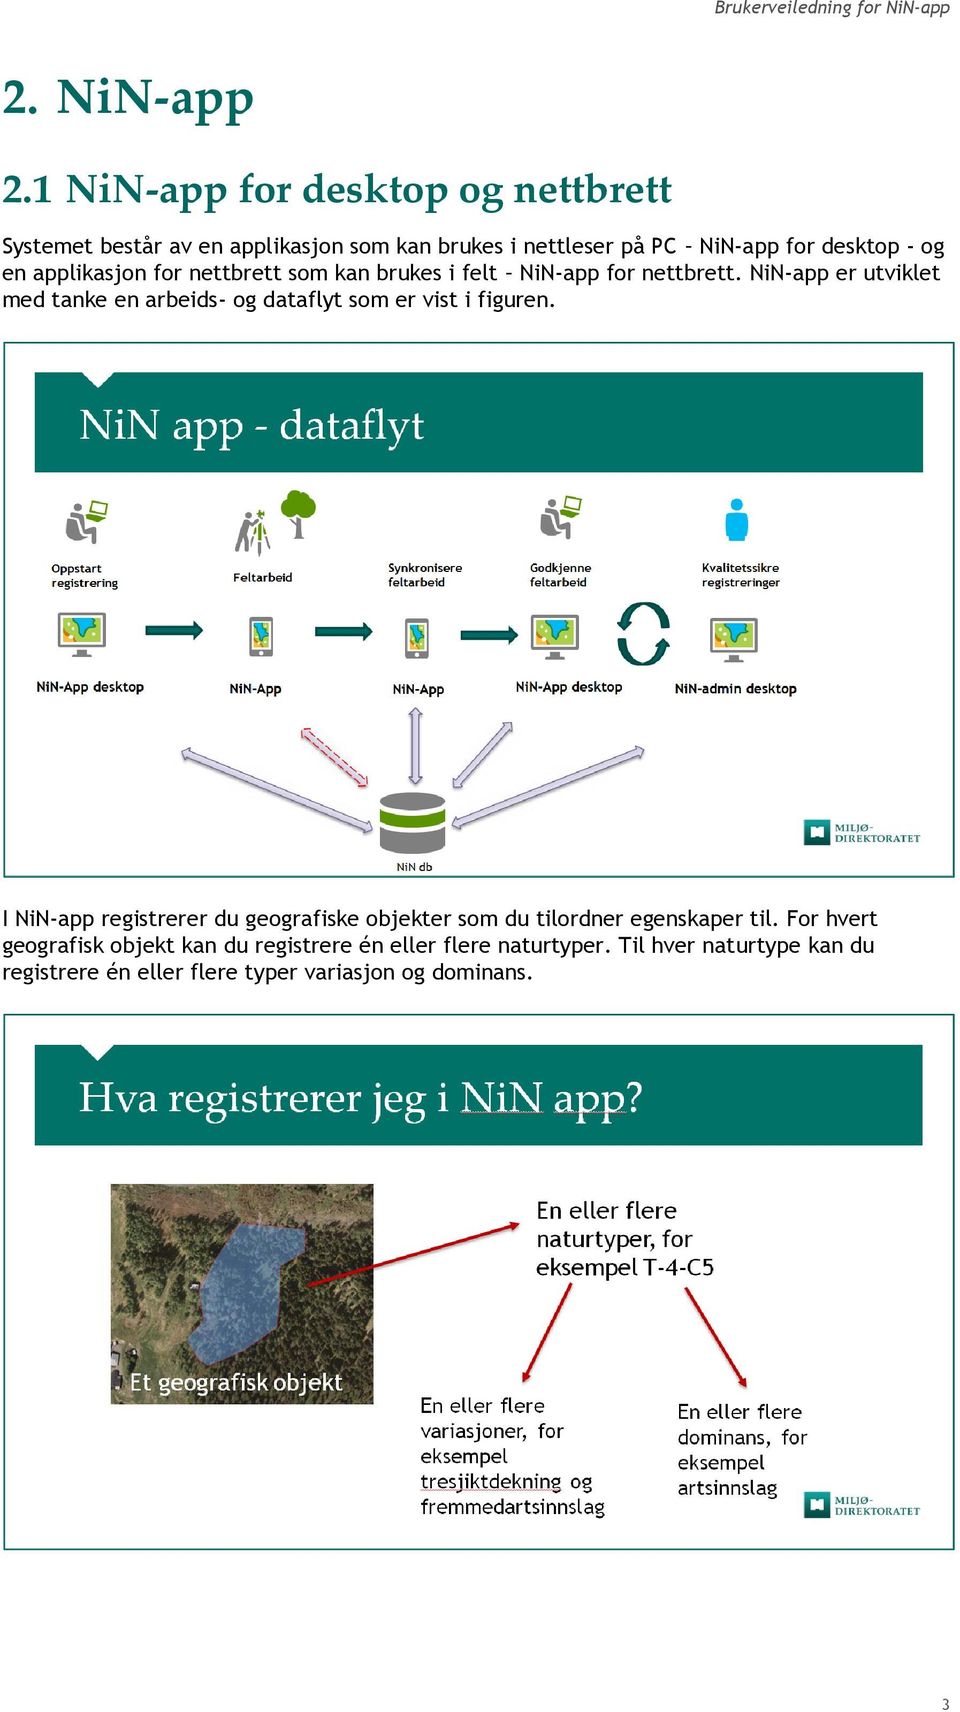 applikasjon for nettbrett som kan brukes i felt NiN-app for nettbrett.